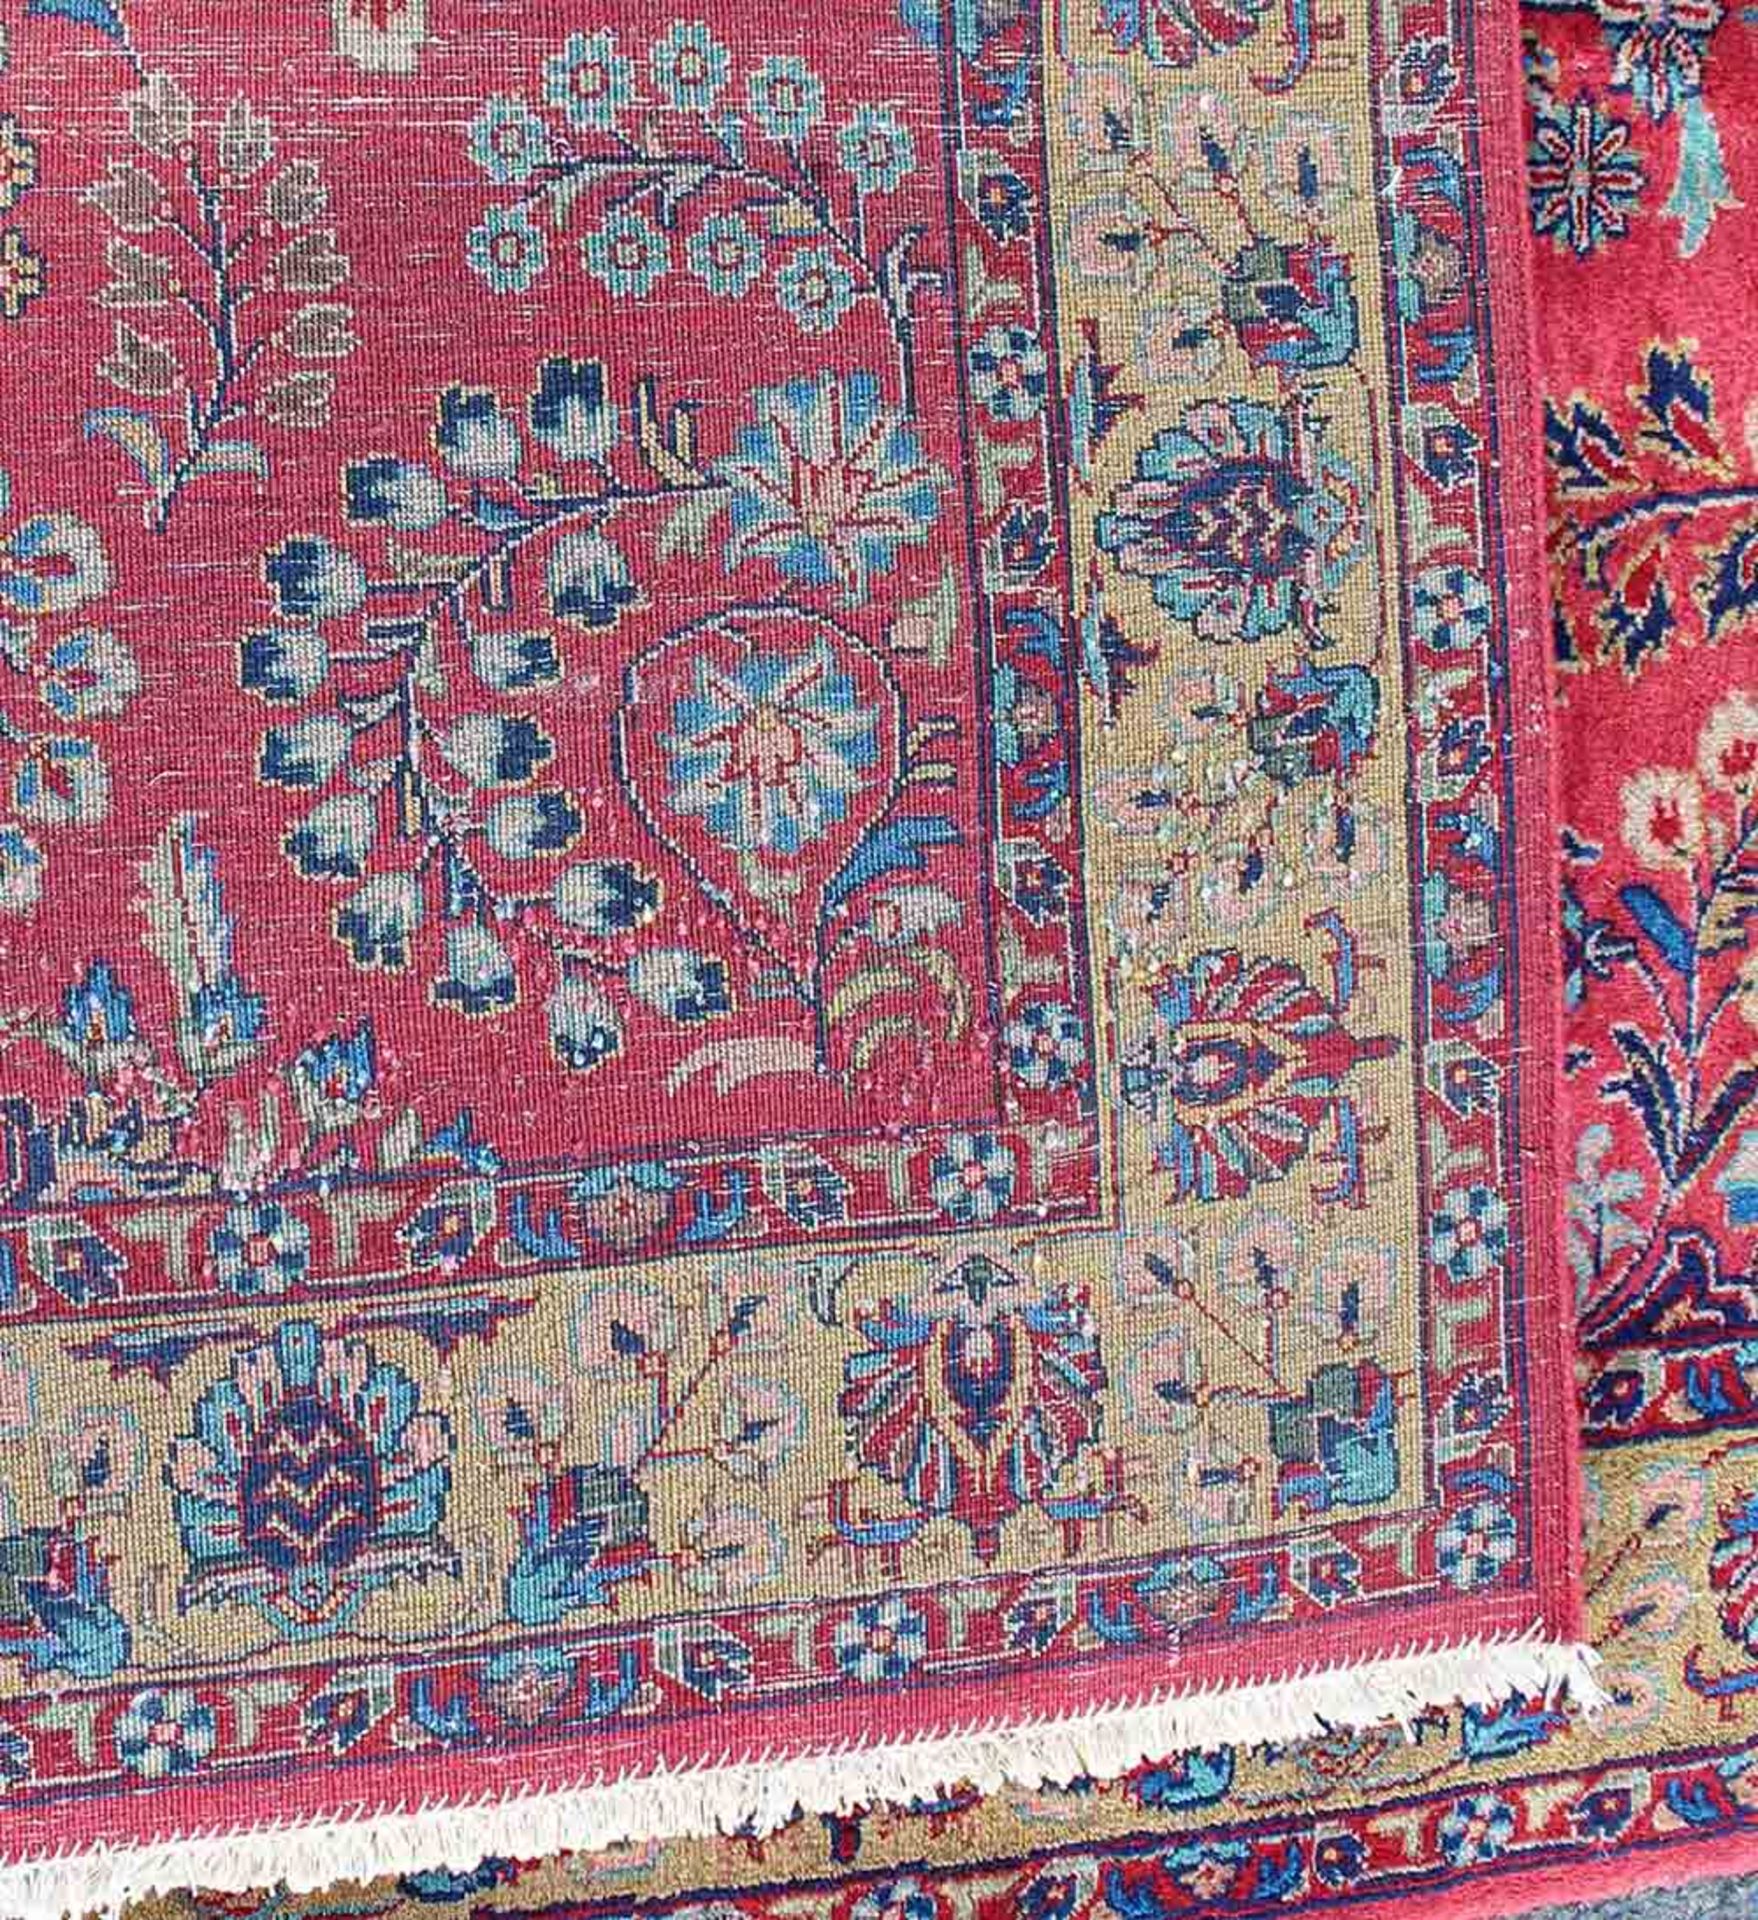 Keschan Persian carpet. Iran. Around 90-100 years old. - Image 6 of 6